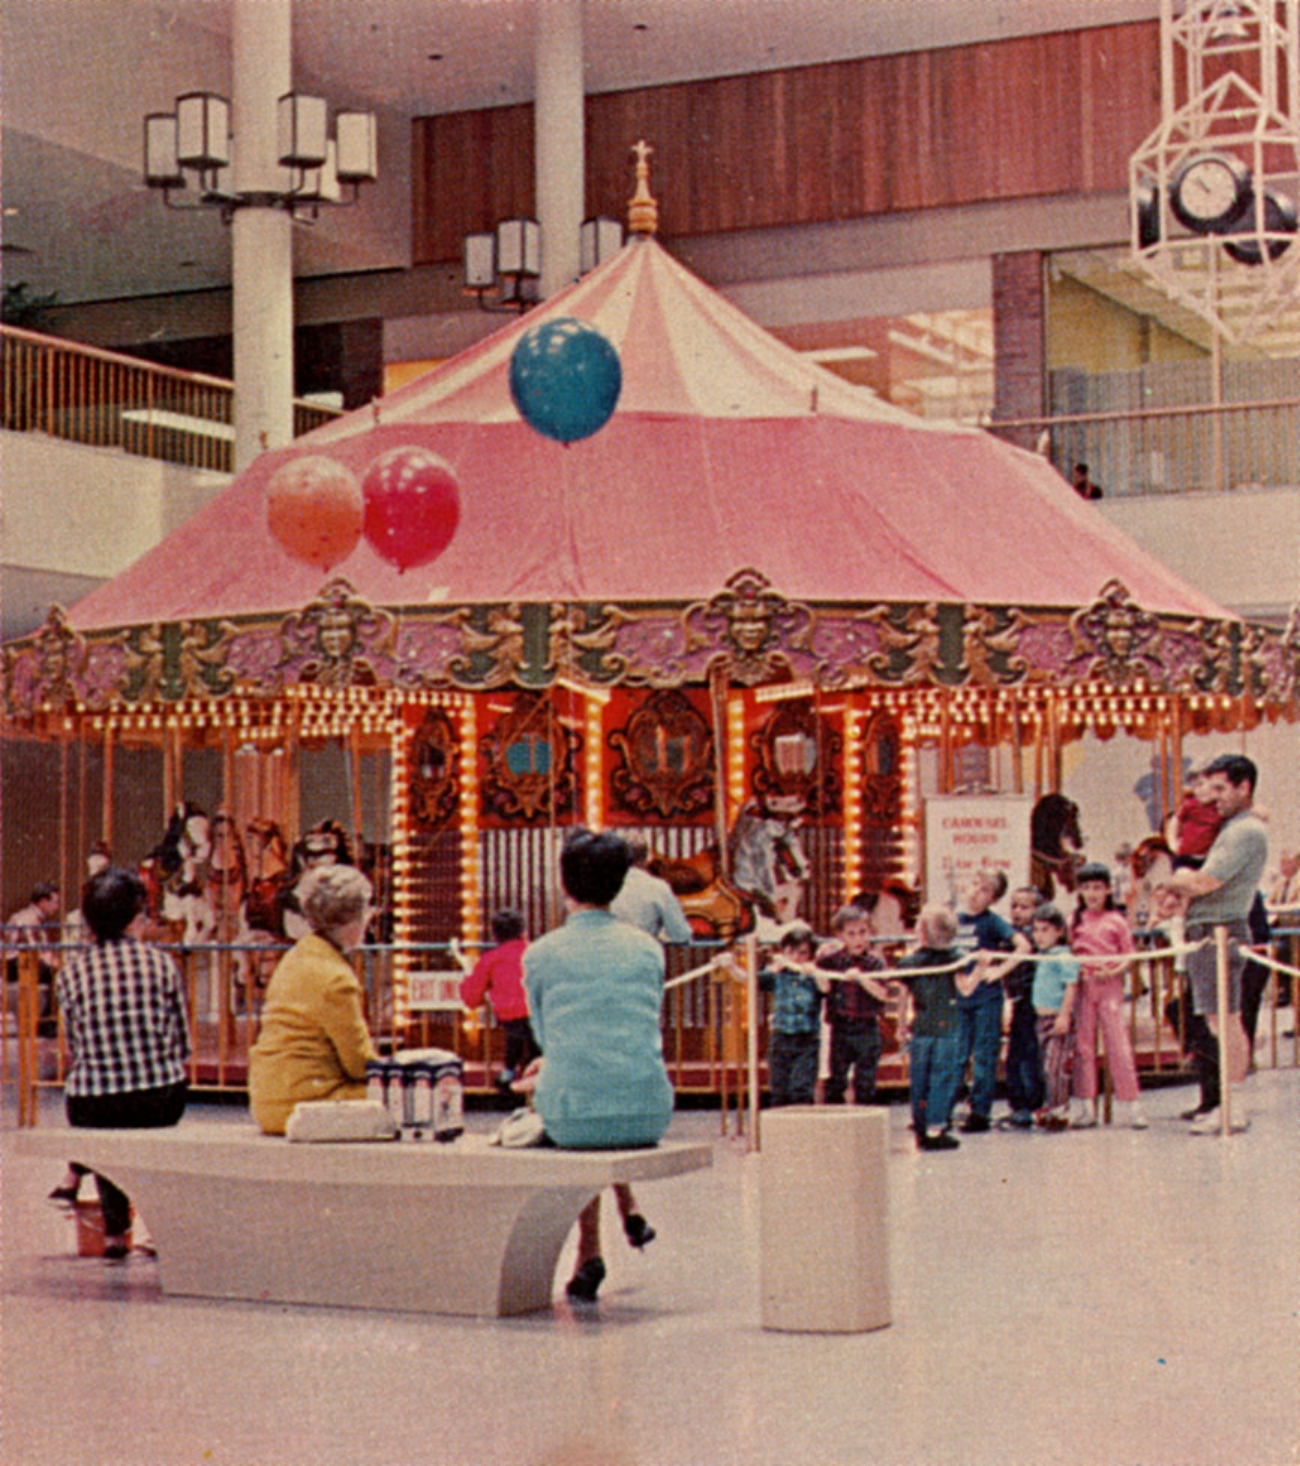 1960s mall in CA